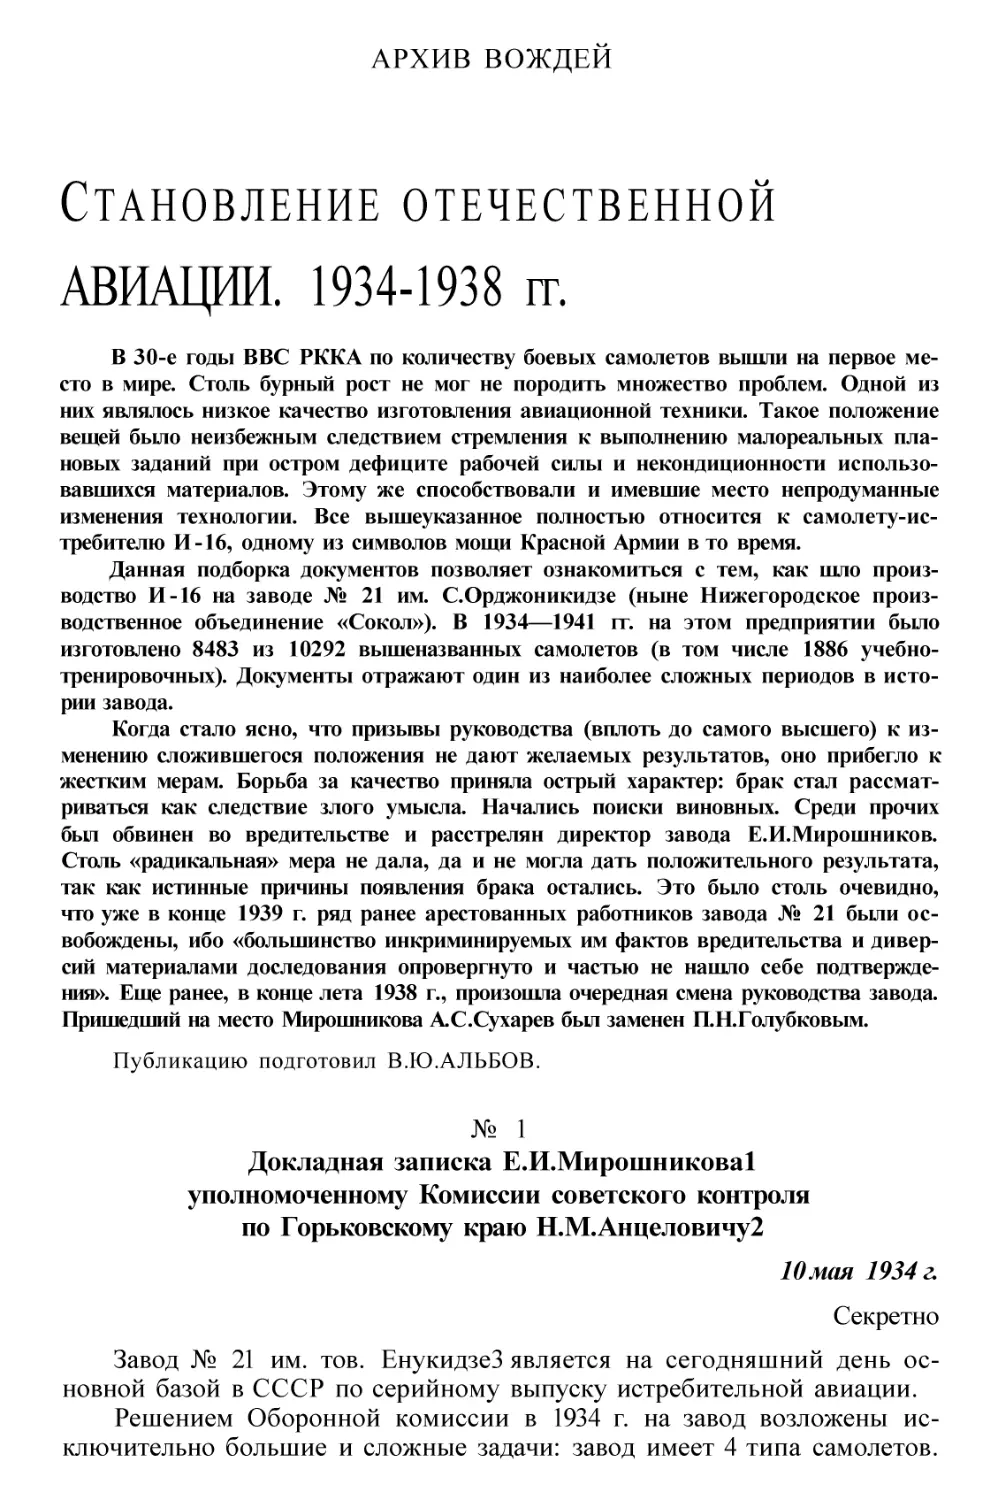 Становление отечественной авиации. 1934—1938 гг. (В.Ю. Альбов)